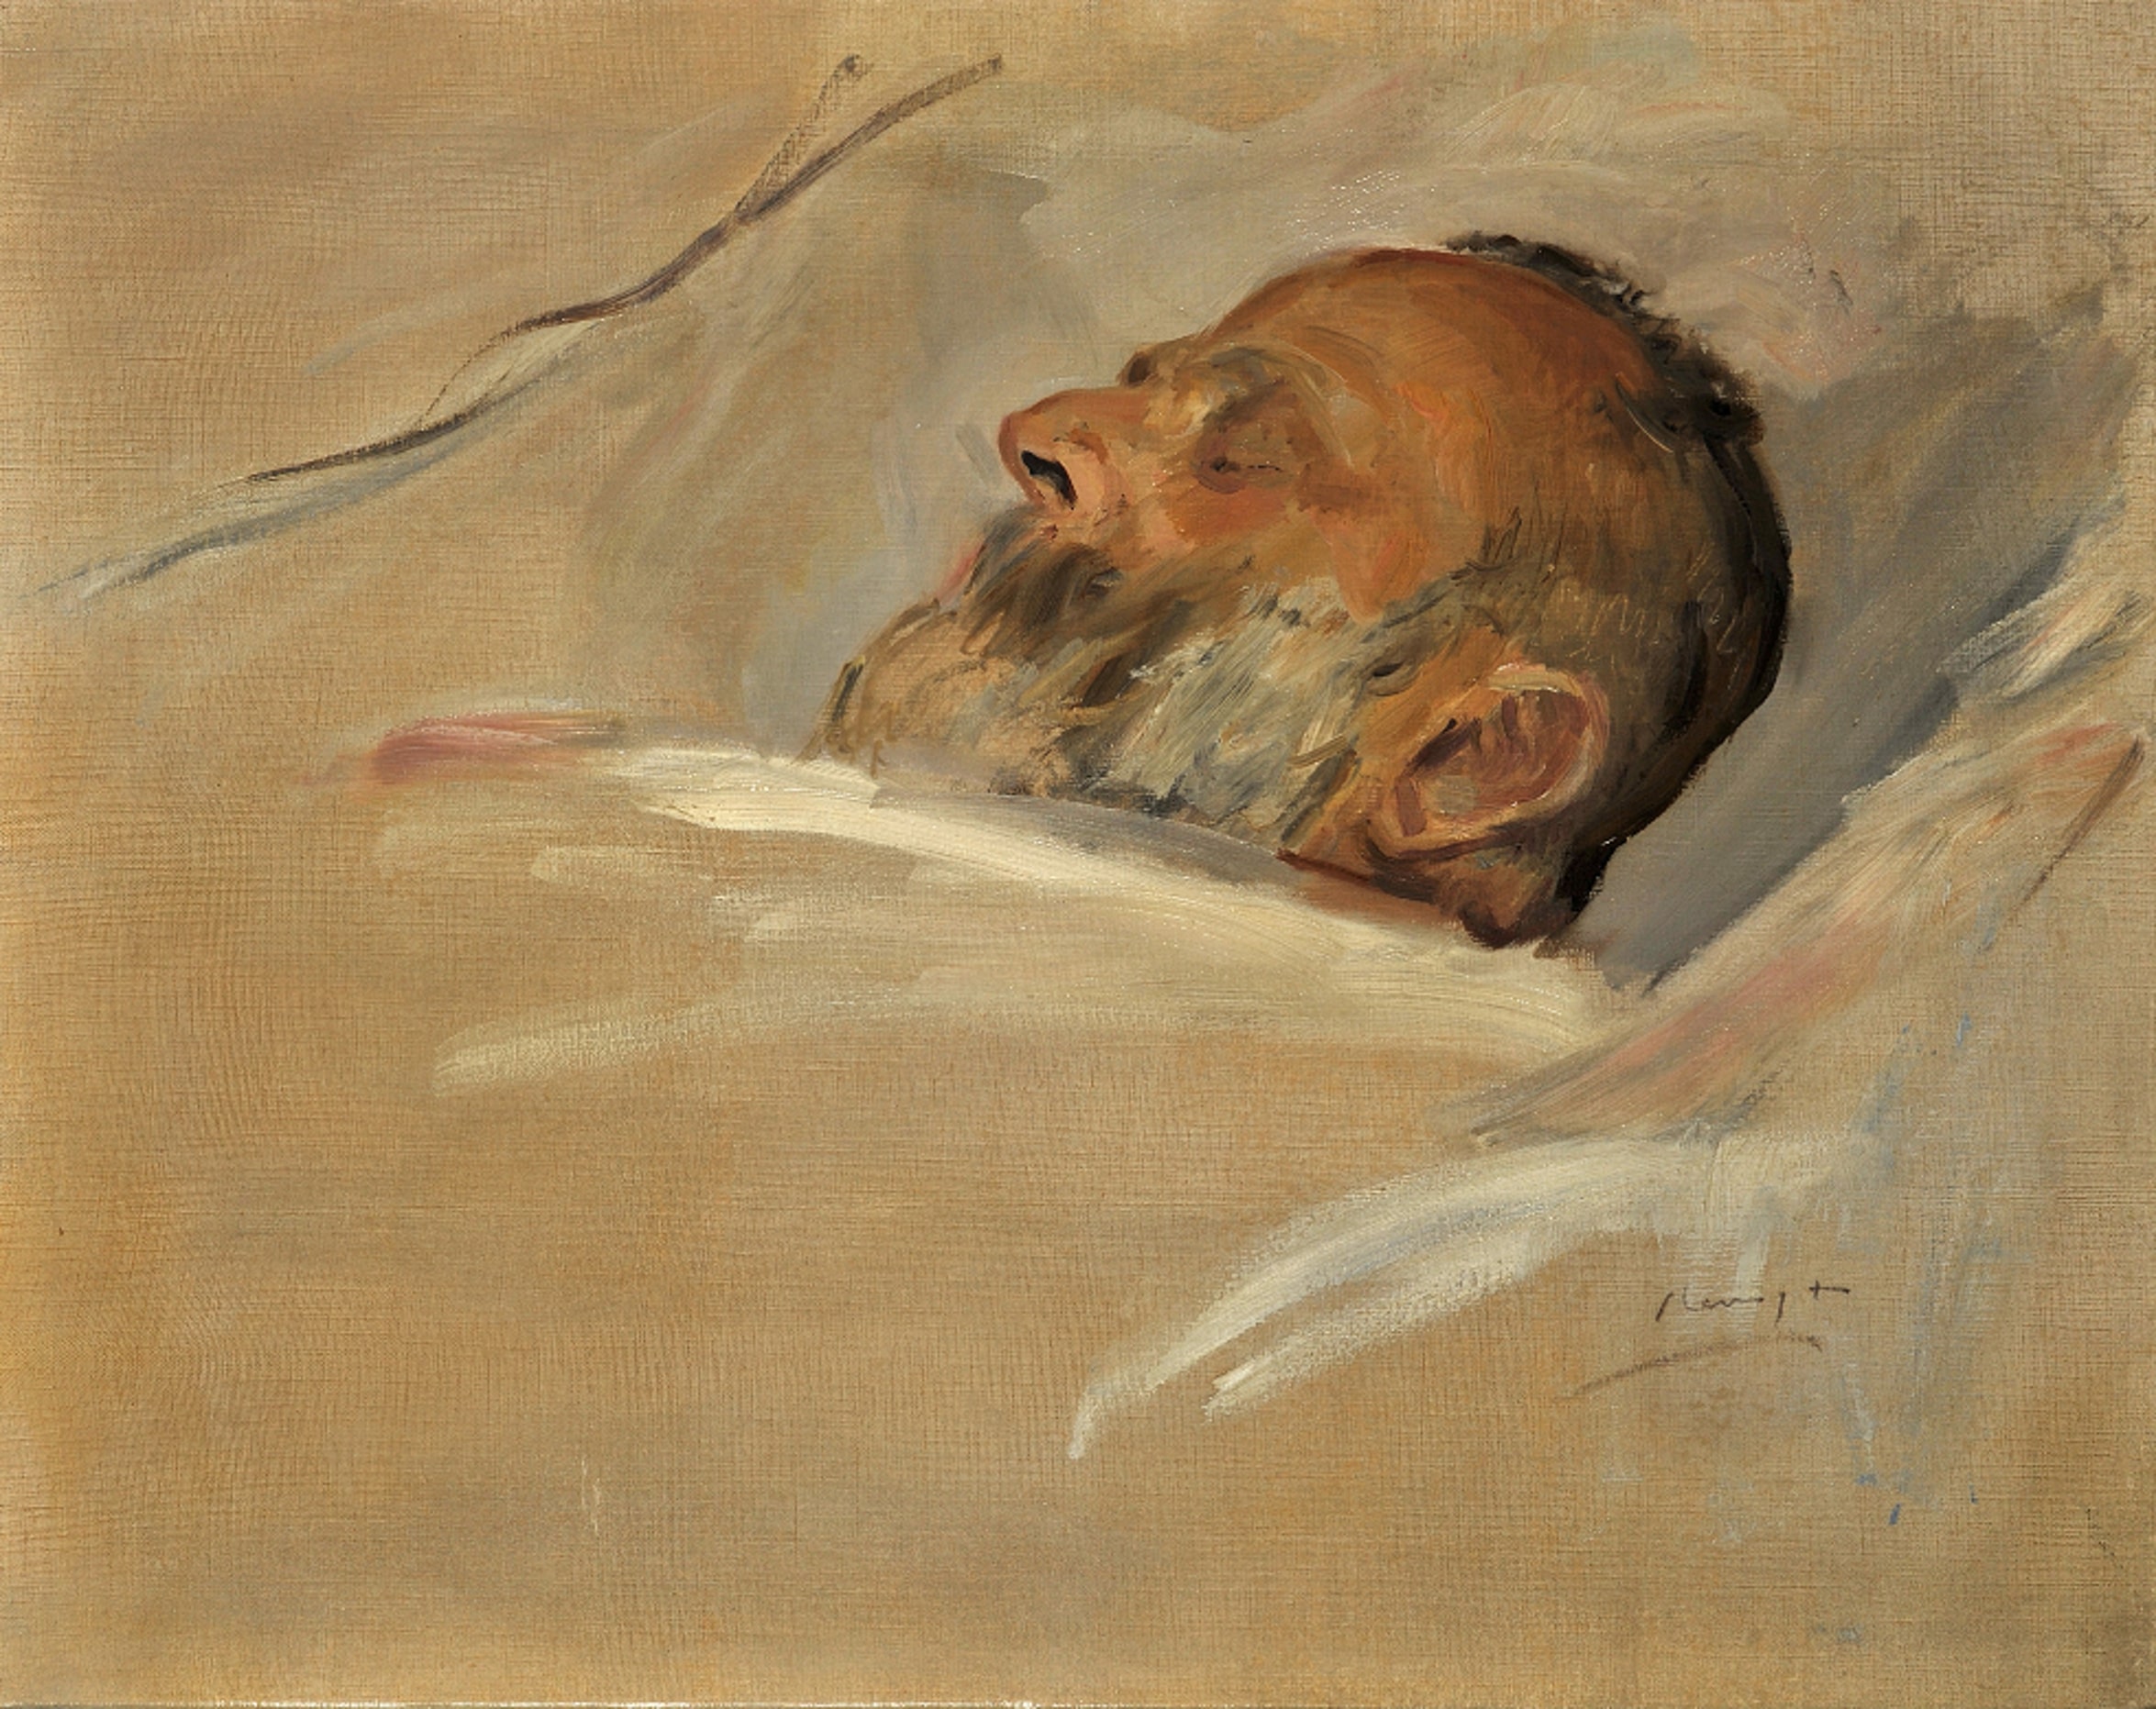 Totenbett Porträt Julius Cassirer (Portrait of Julius Cassirer on his death bed)